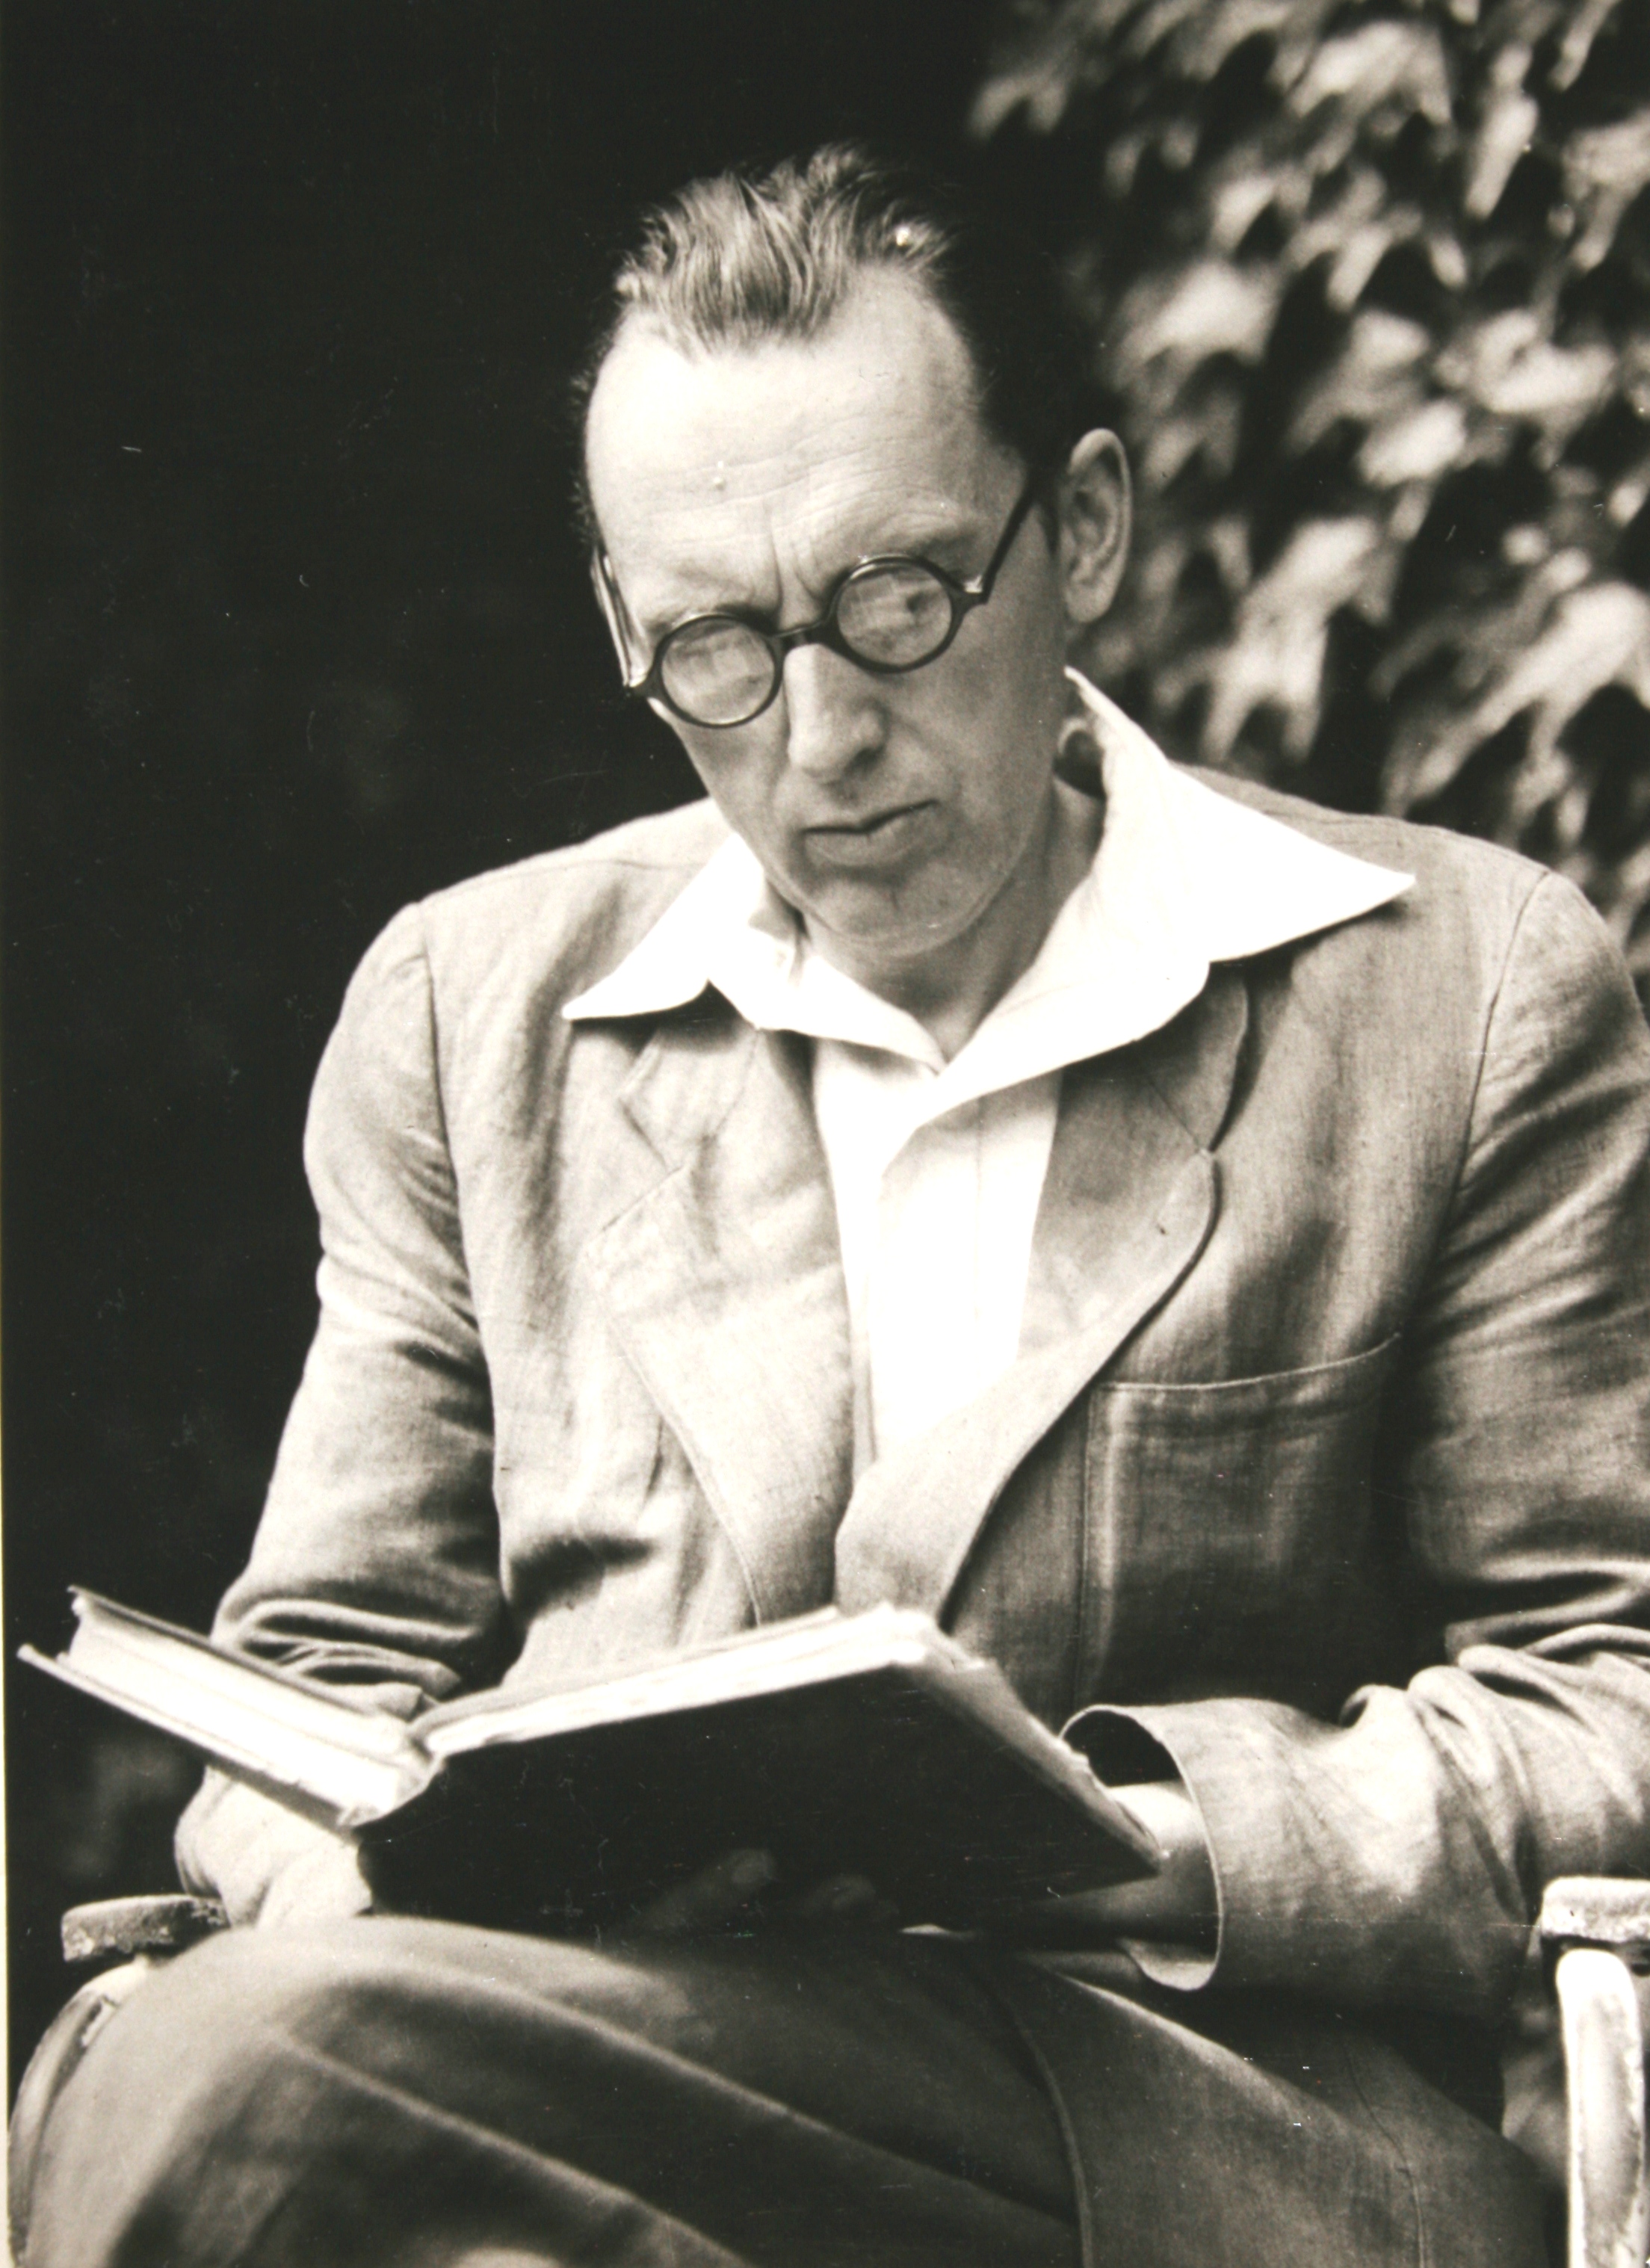 István Bibó reading in the garden, Leányfalu, before 1956